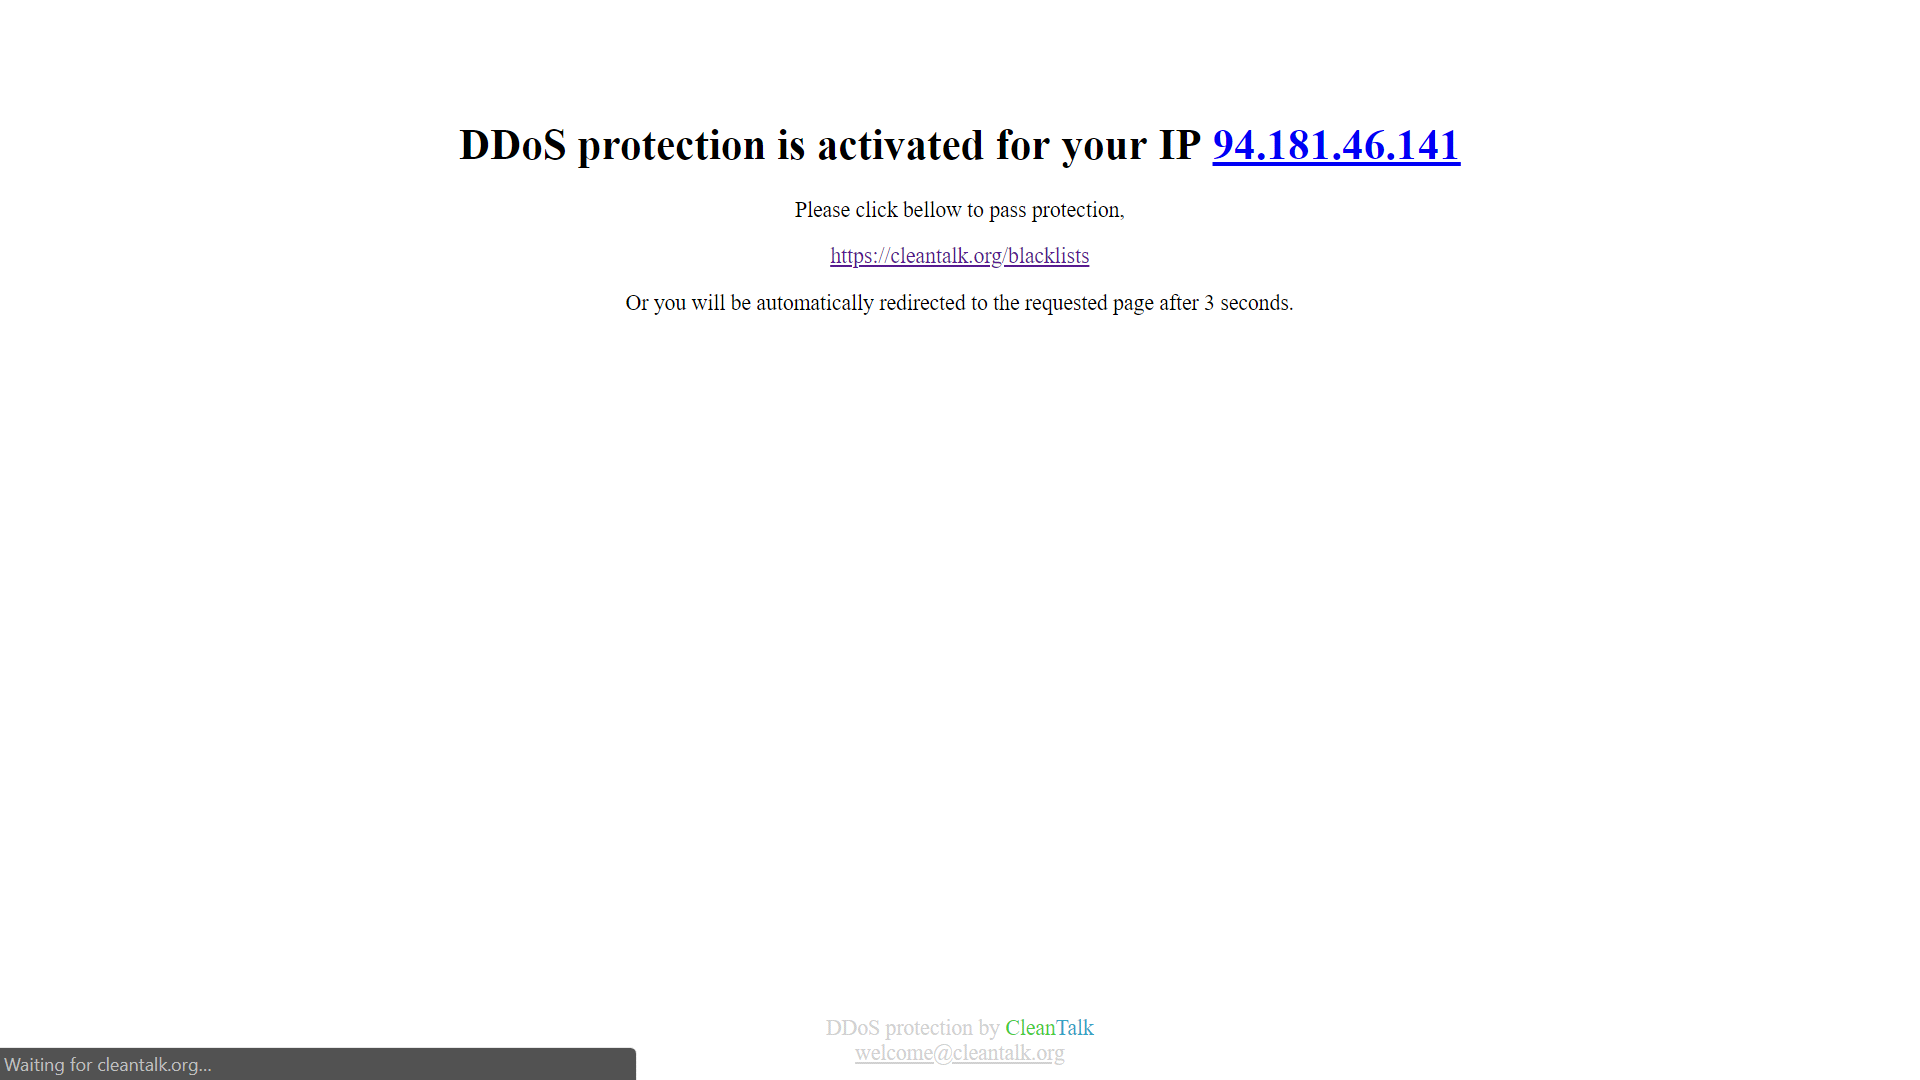 Implemente de maneira rápida proteção contra DDOs no seu site.